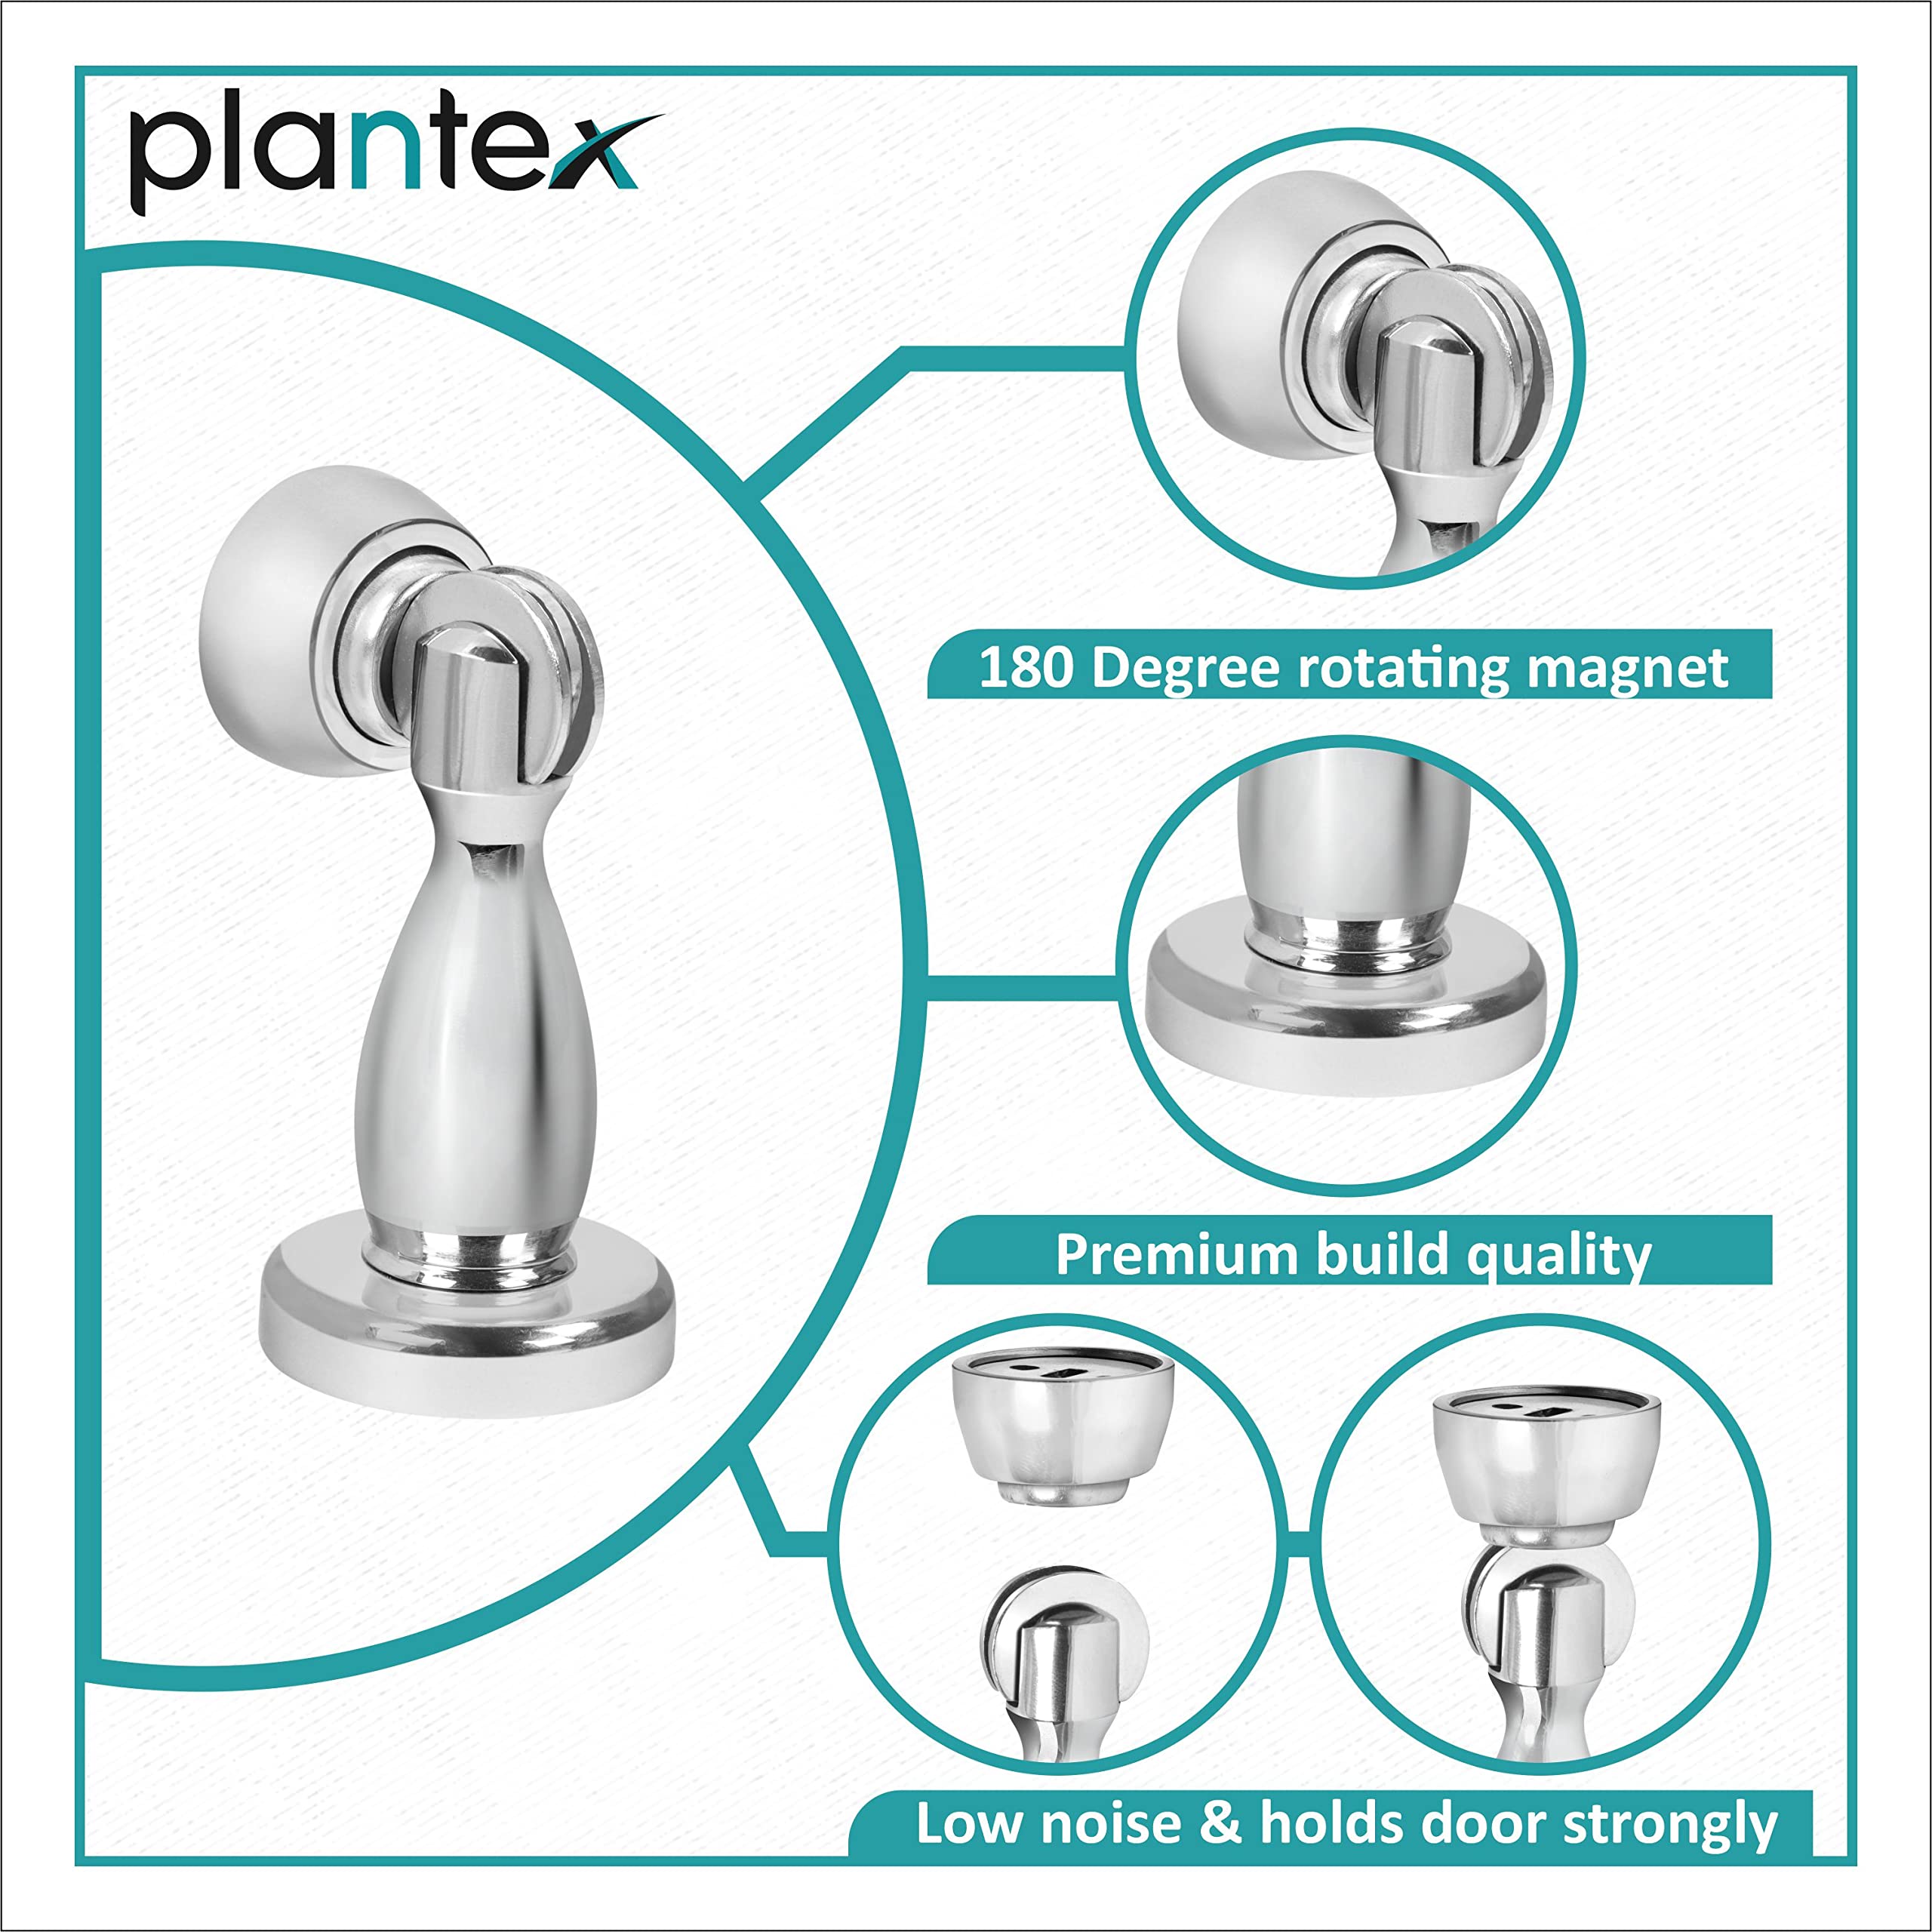 Plantex Magnetic Door Stopper for Home/Magnet Door Catcher/ Door Holder for Main Door/ Bedroom/Office and Hotel Door (4 inch, Chrome)